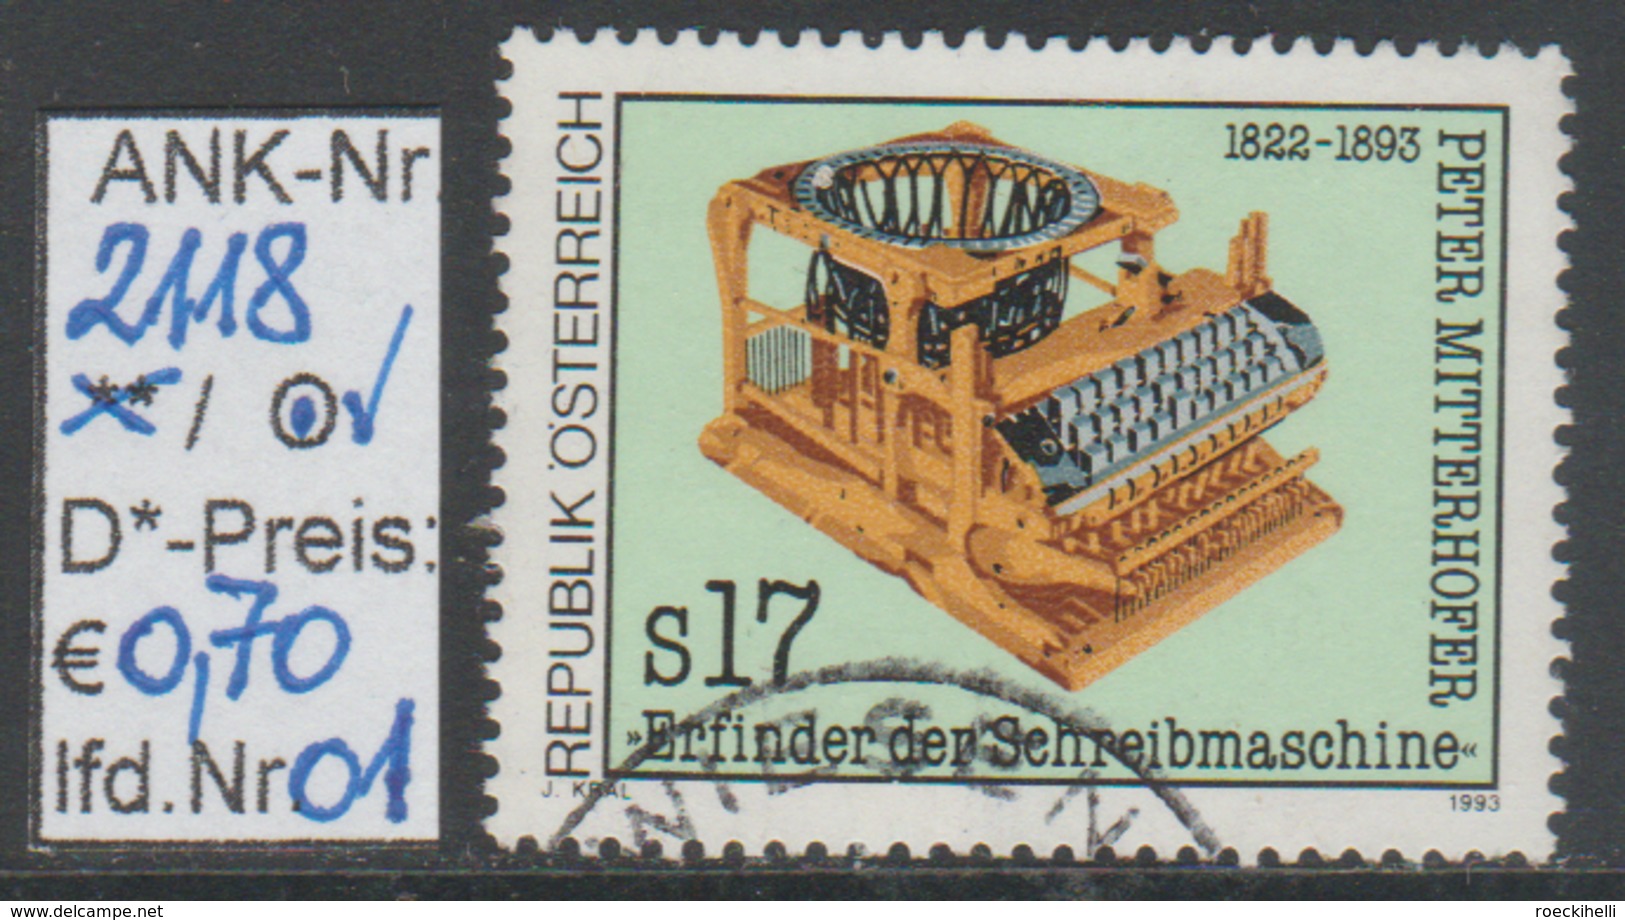 19.2.1993  -  SM  "100. Todestag V. Peter Mitterhofer"   -   O  Gestempelt  -  Siehe Scan  (2118o 01-02) - Used Stamps